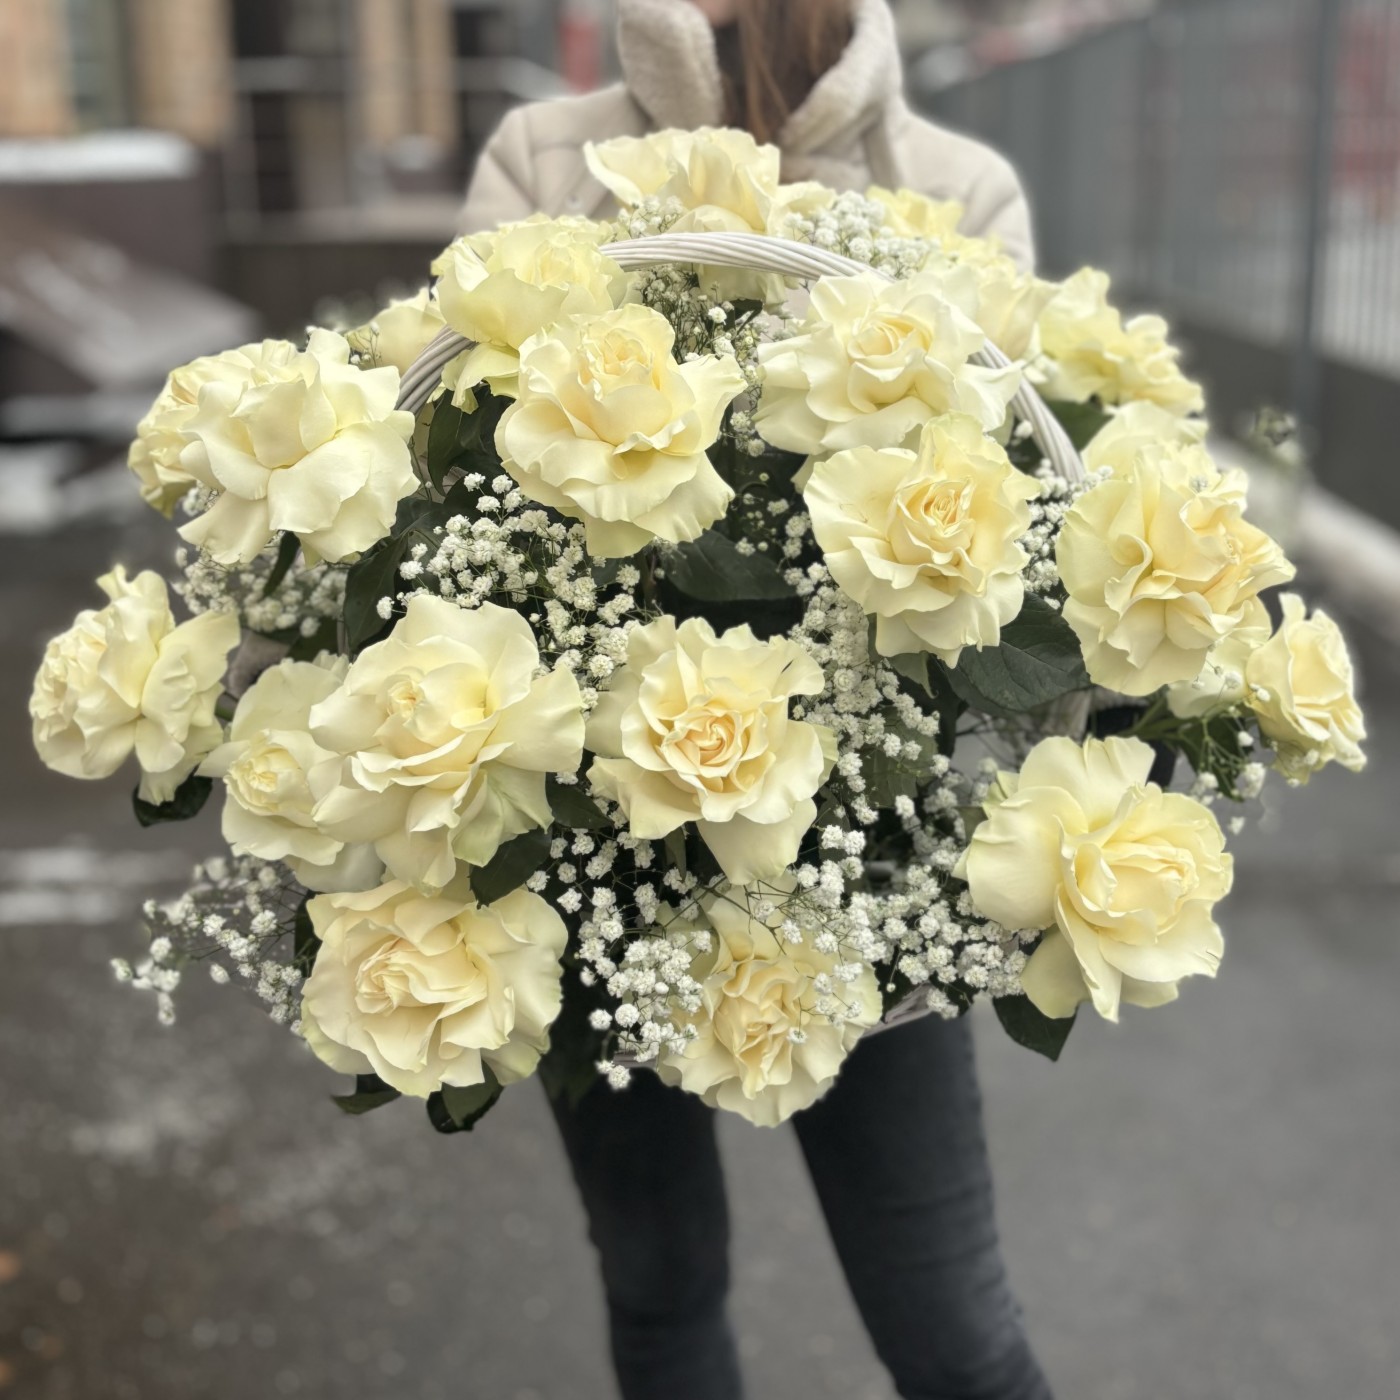 25 пышных белых роз в корзине